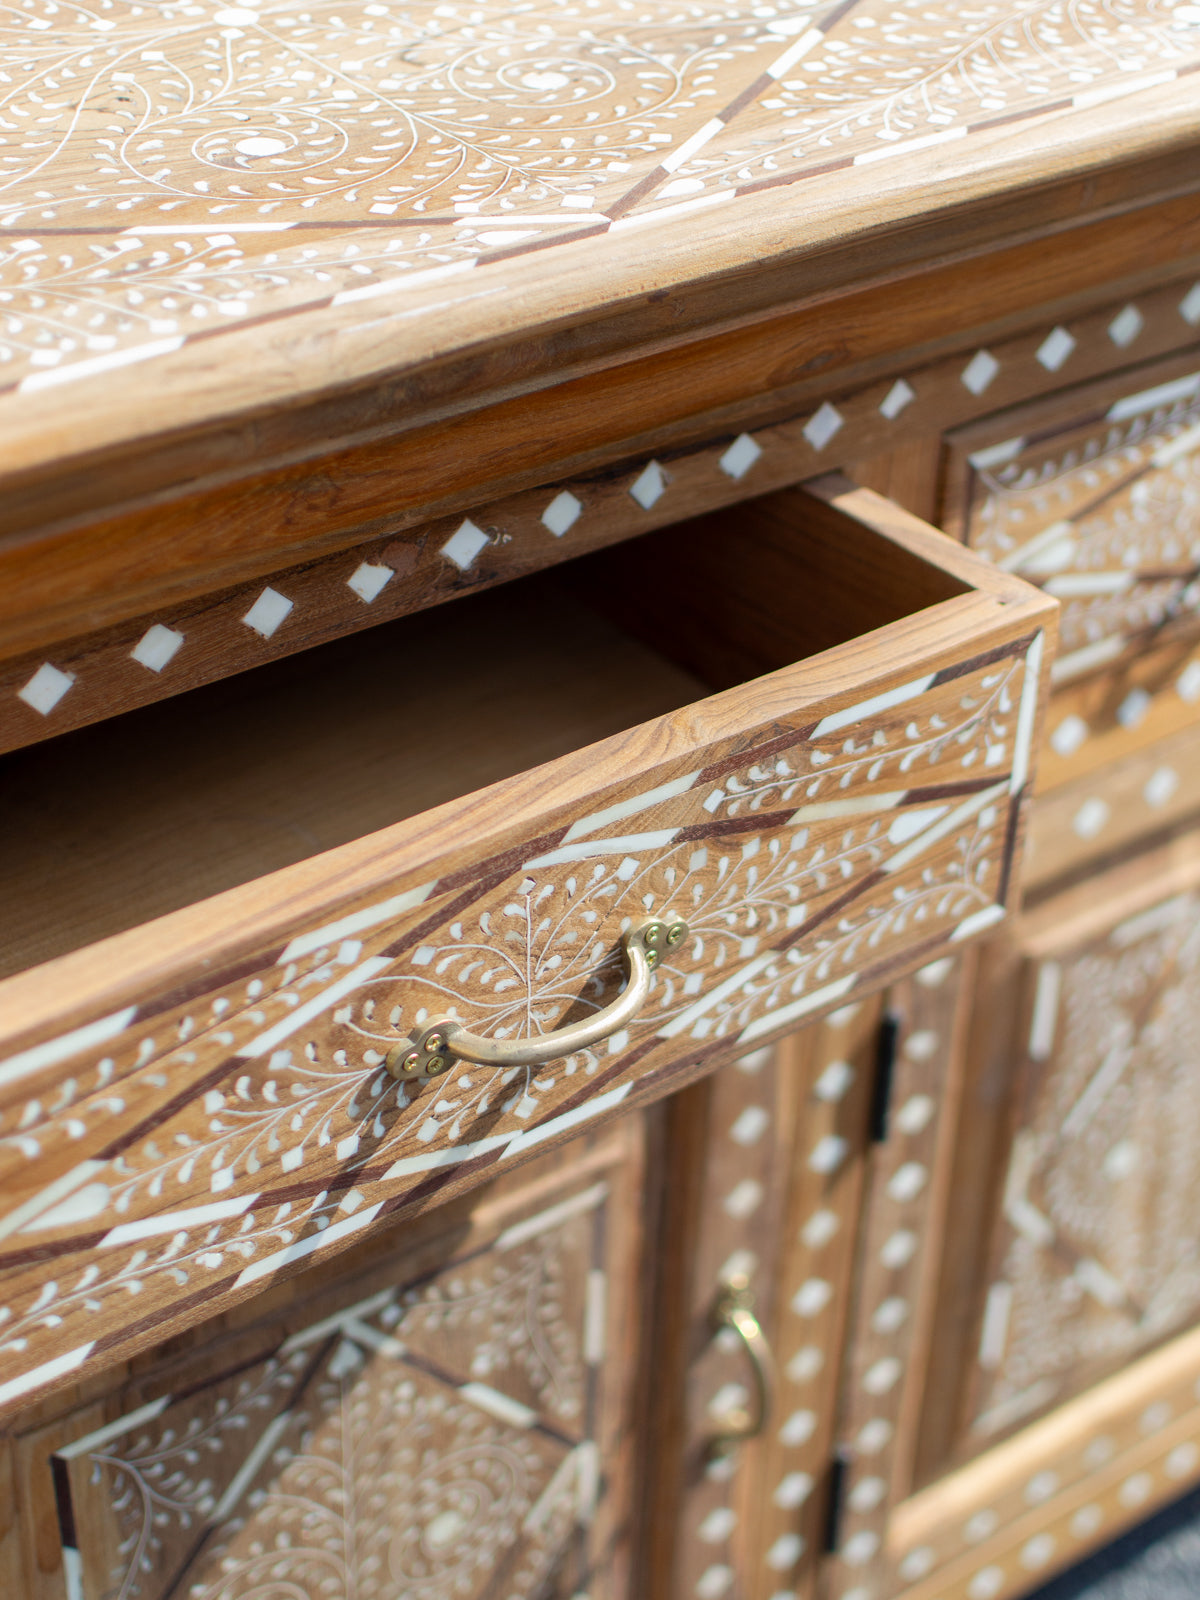 OOAK Bone Inlay Wooden Cabinet